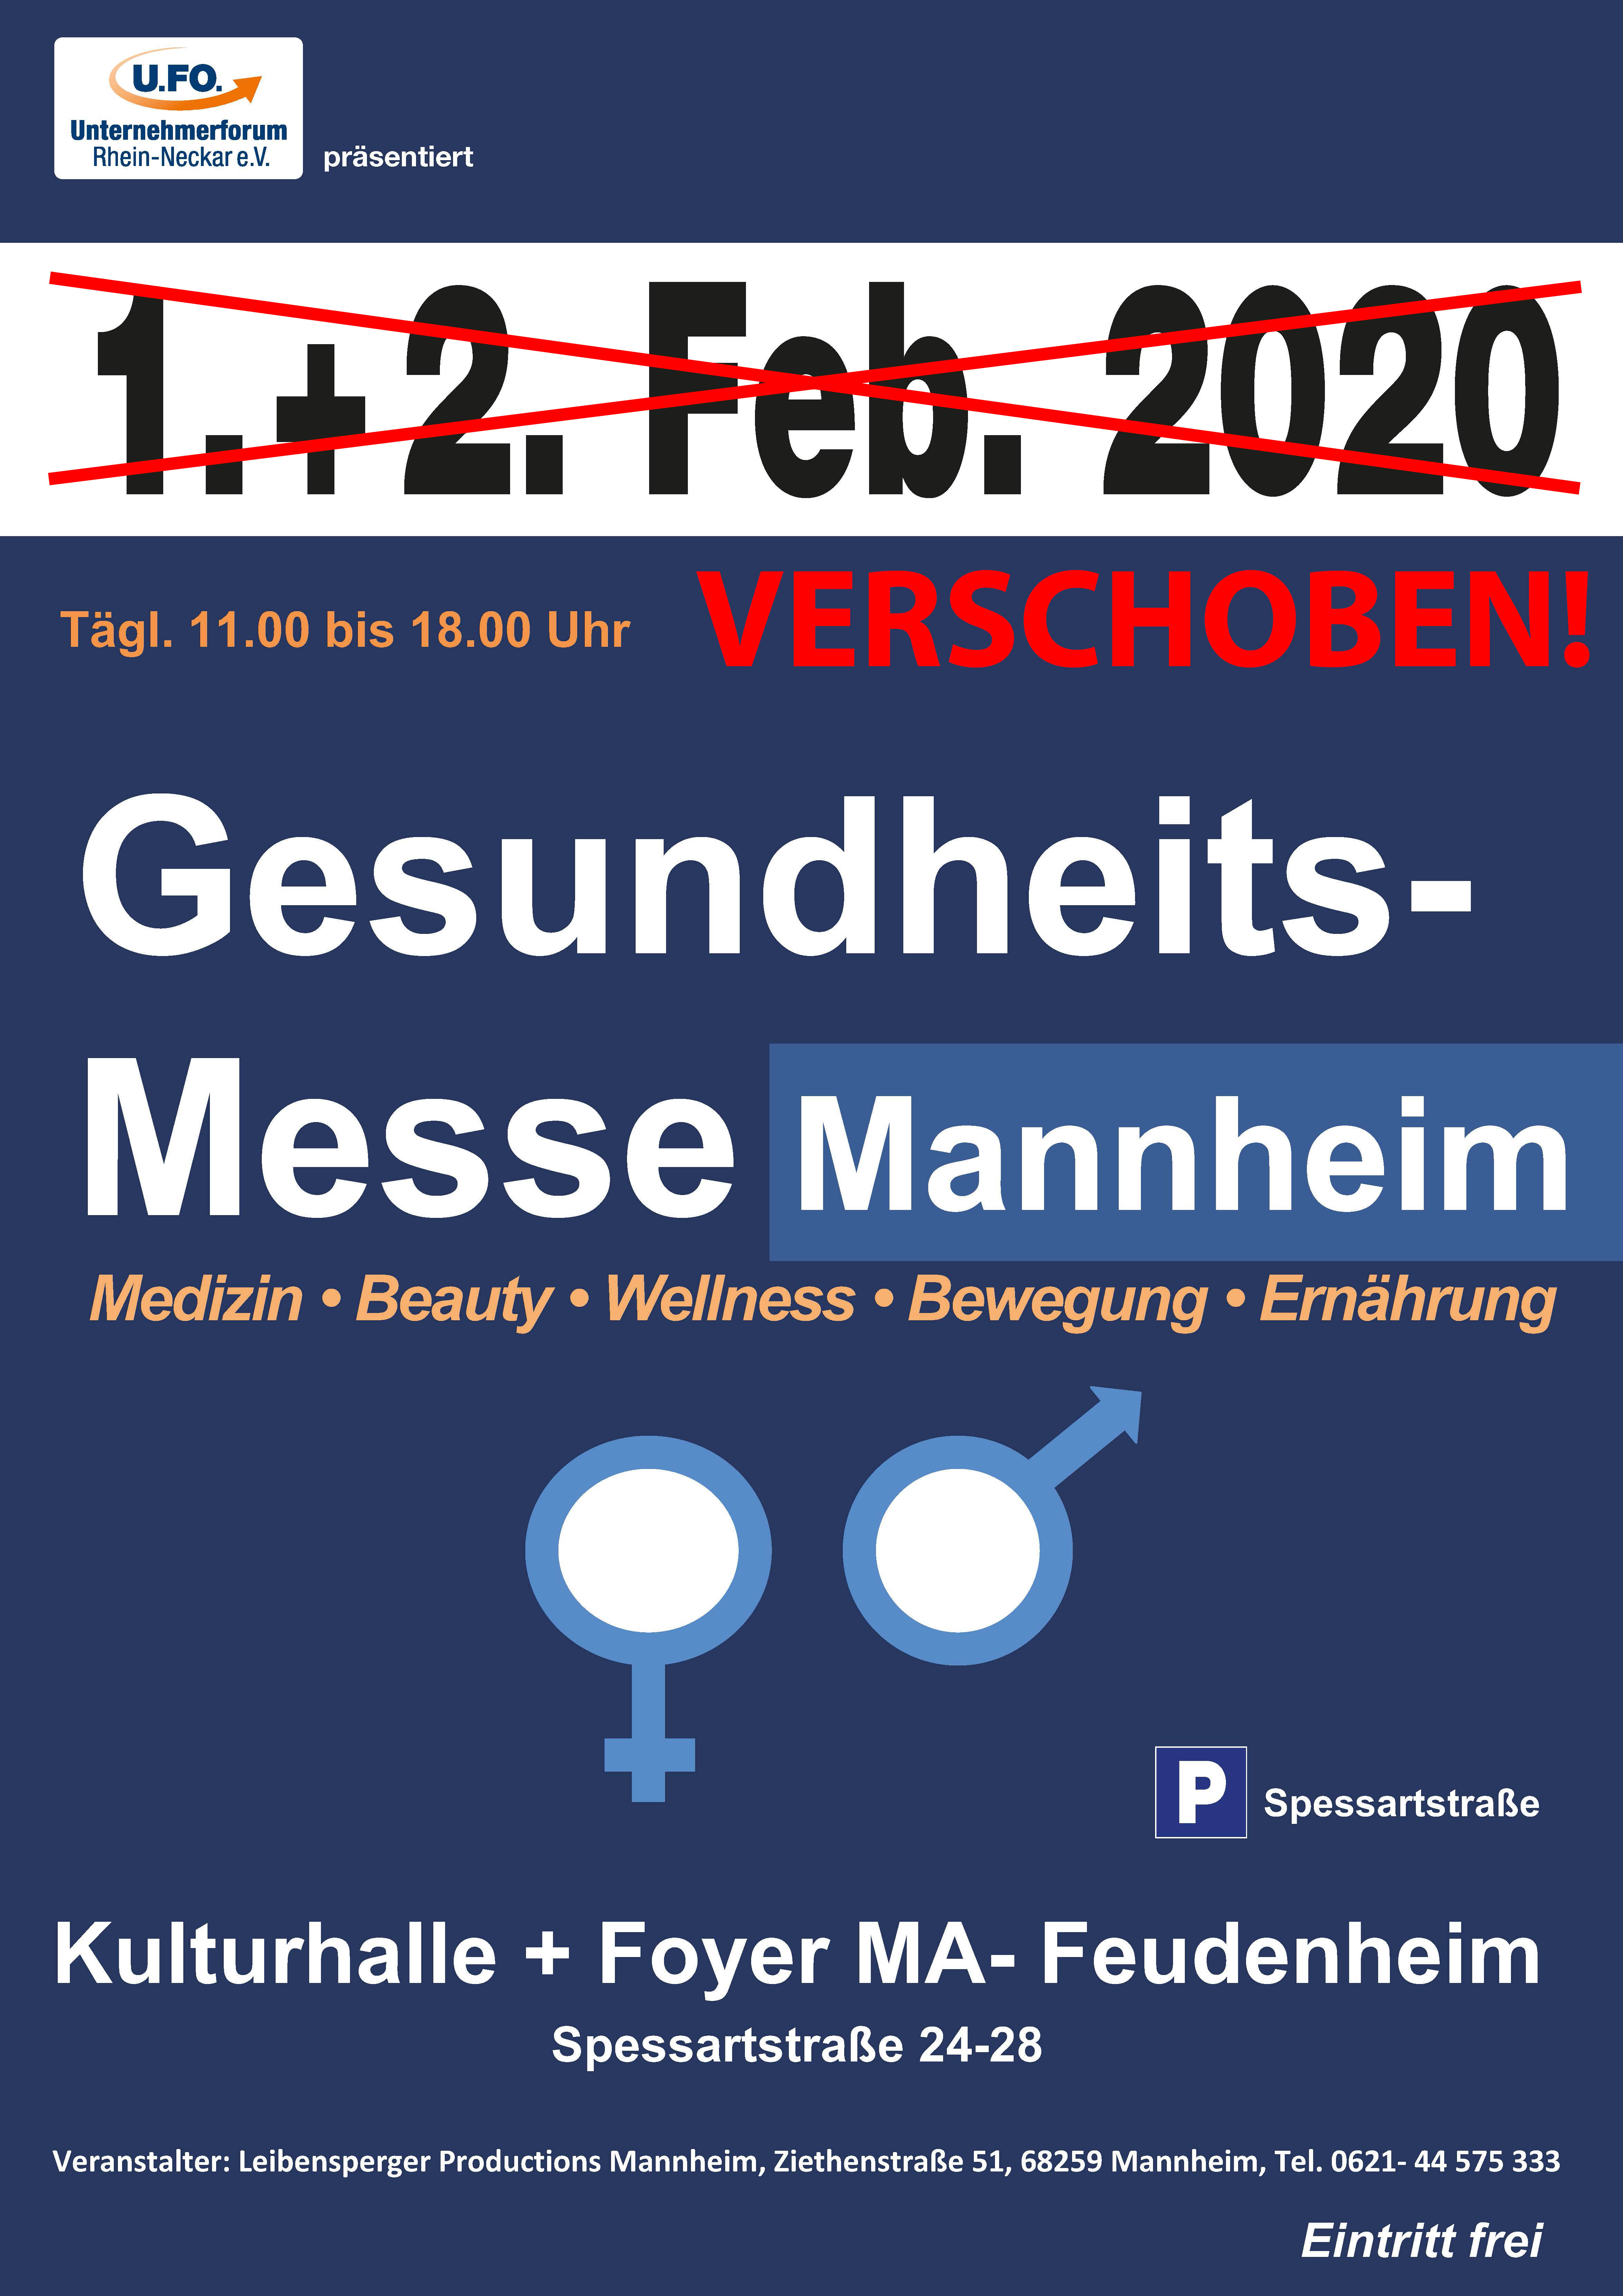 Gesundheitsmesse Mannheim verschoben